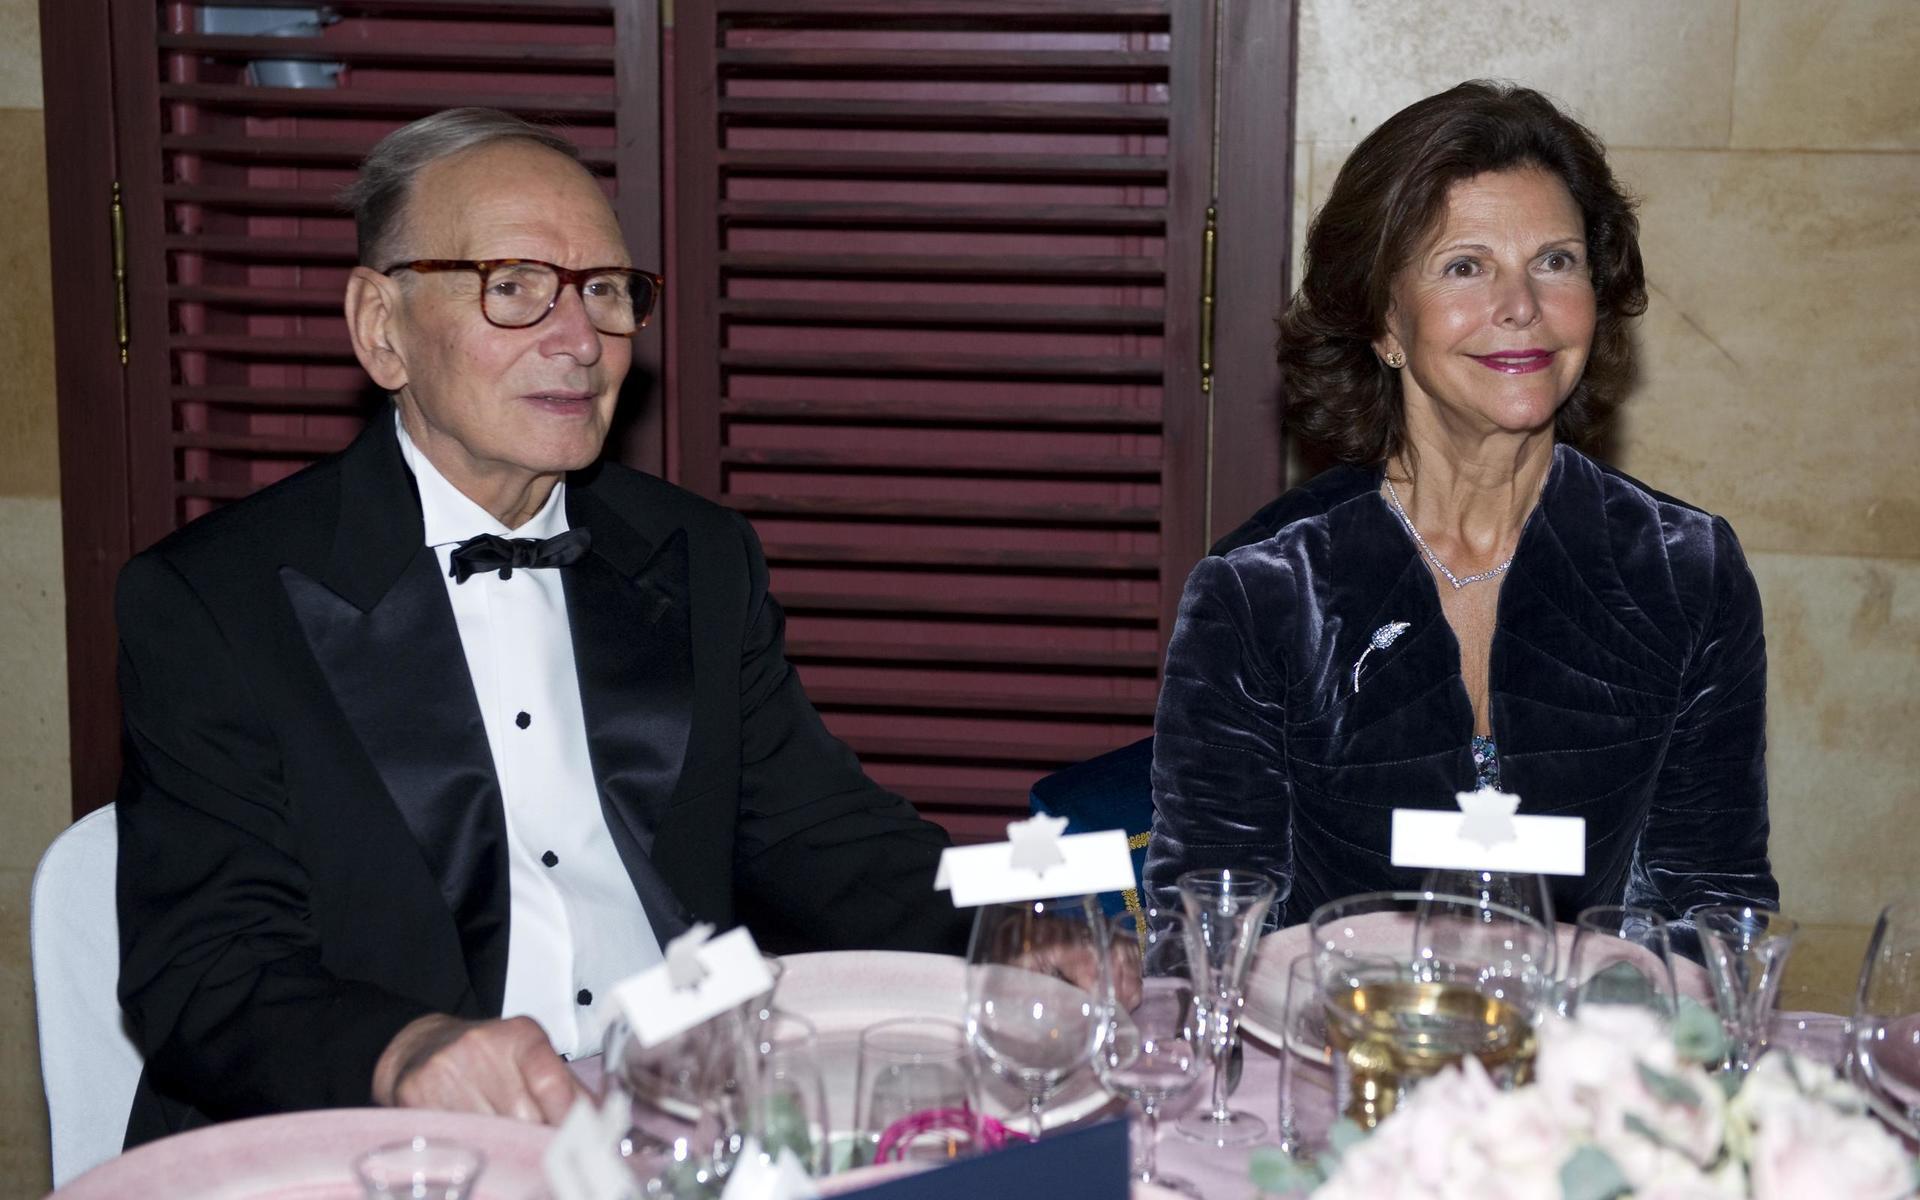 Ennio Morricone till bords med drottning Silvia under Polar Music Prize-banketten på Grand Hotel.